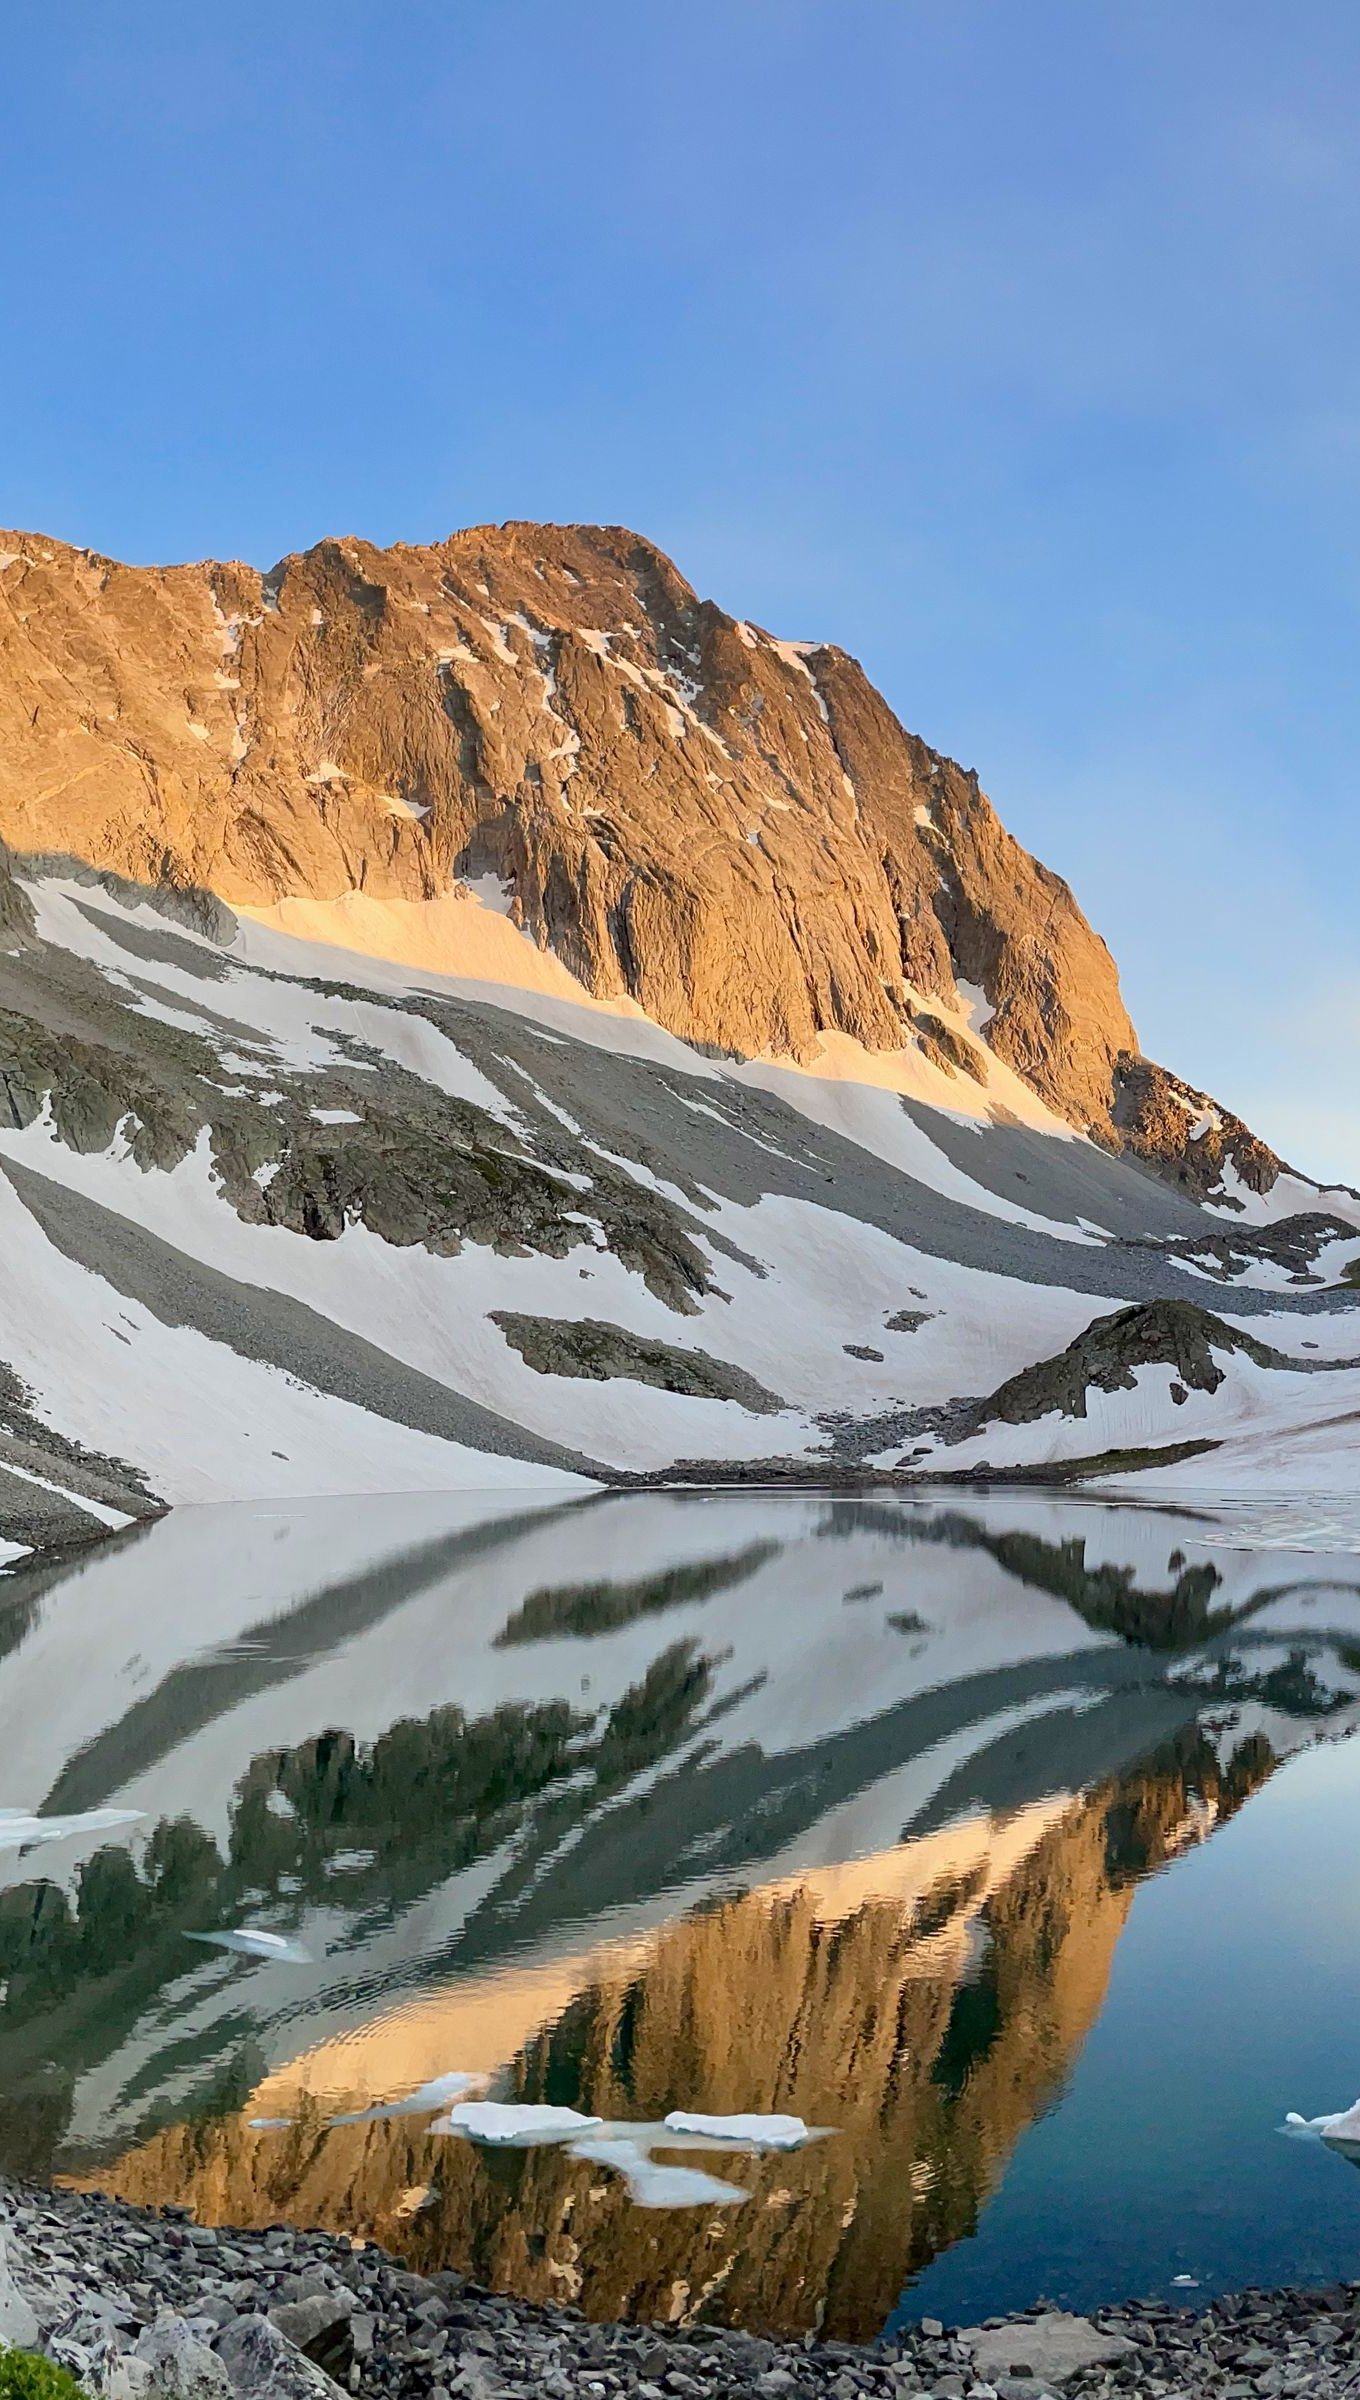 Fondos de pantalla Montañas con nieve y lago en medio Vertical